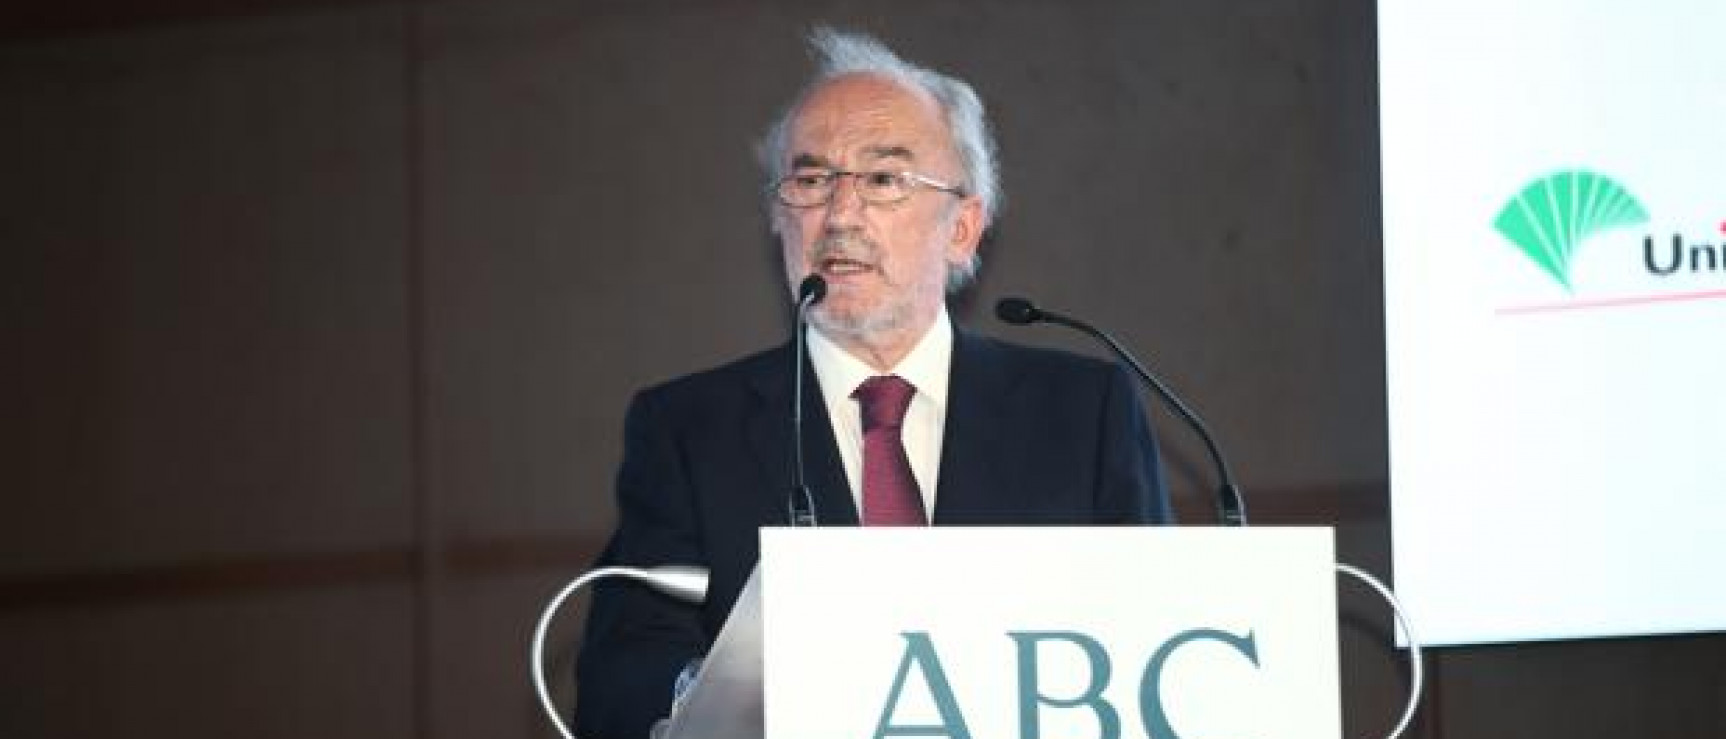 Santiago Muñoz Machado, director de la Real Academia Española y presidente del jurado de los Cavia (foto: Jaime García, ABC)